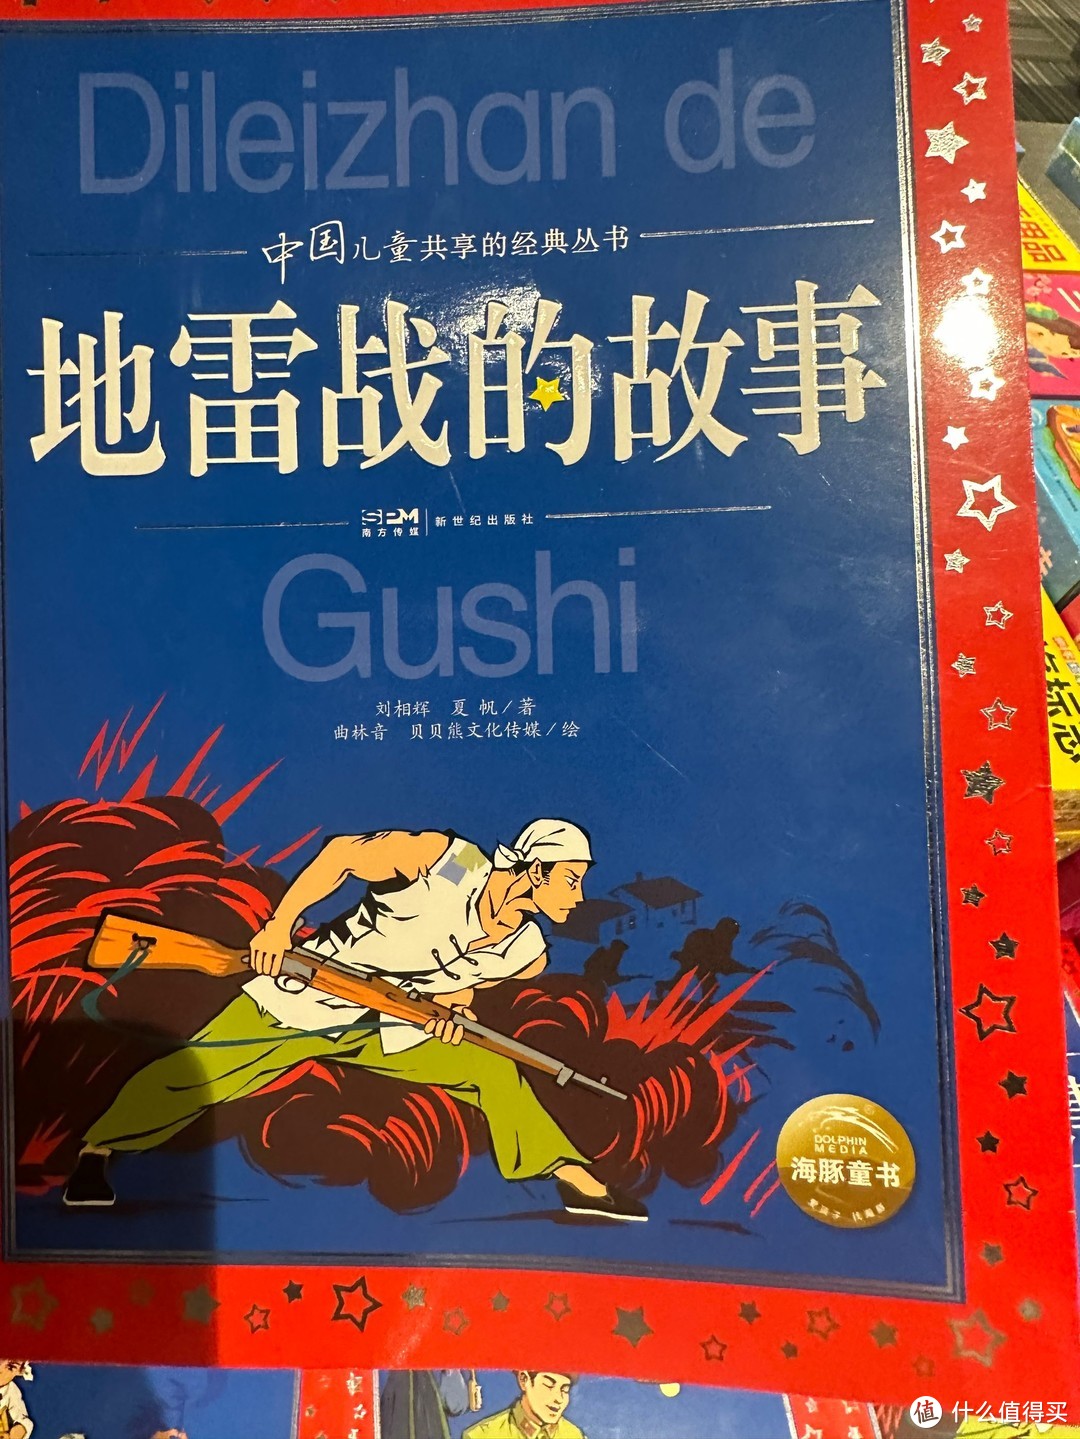 中国儿童共享的经典丛书地雷战的故事。